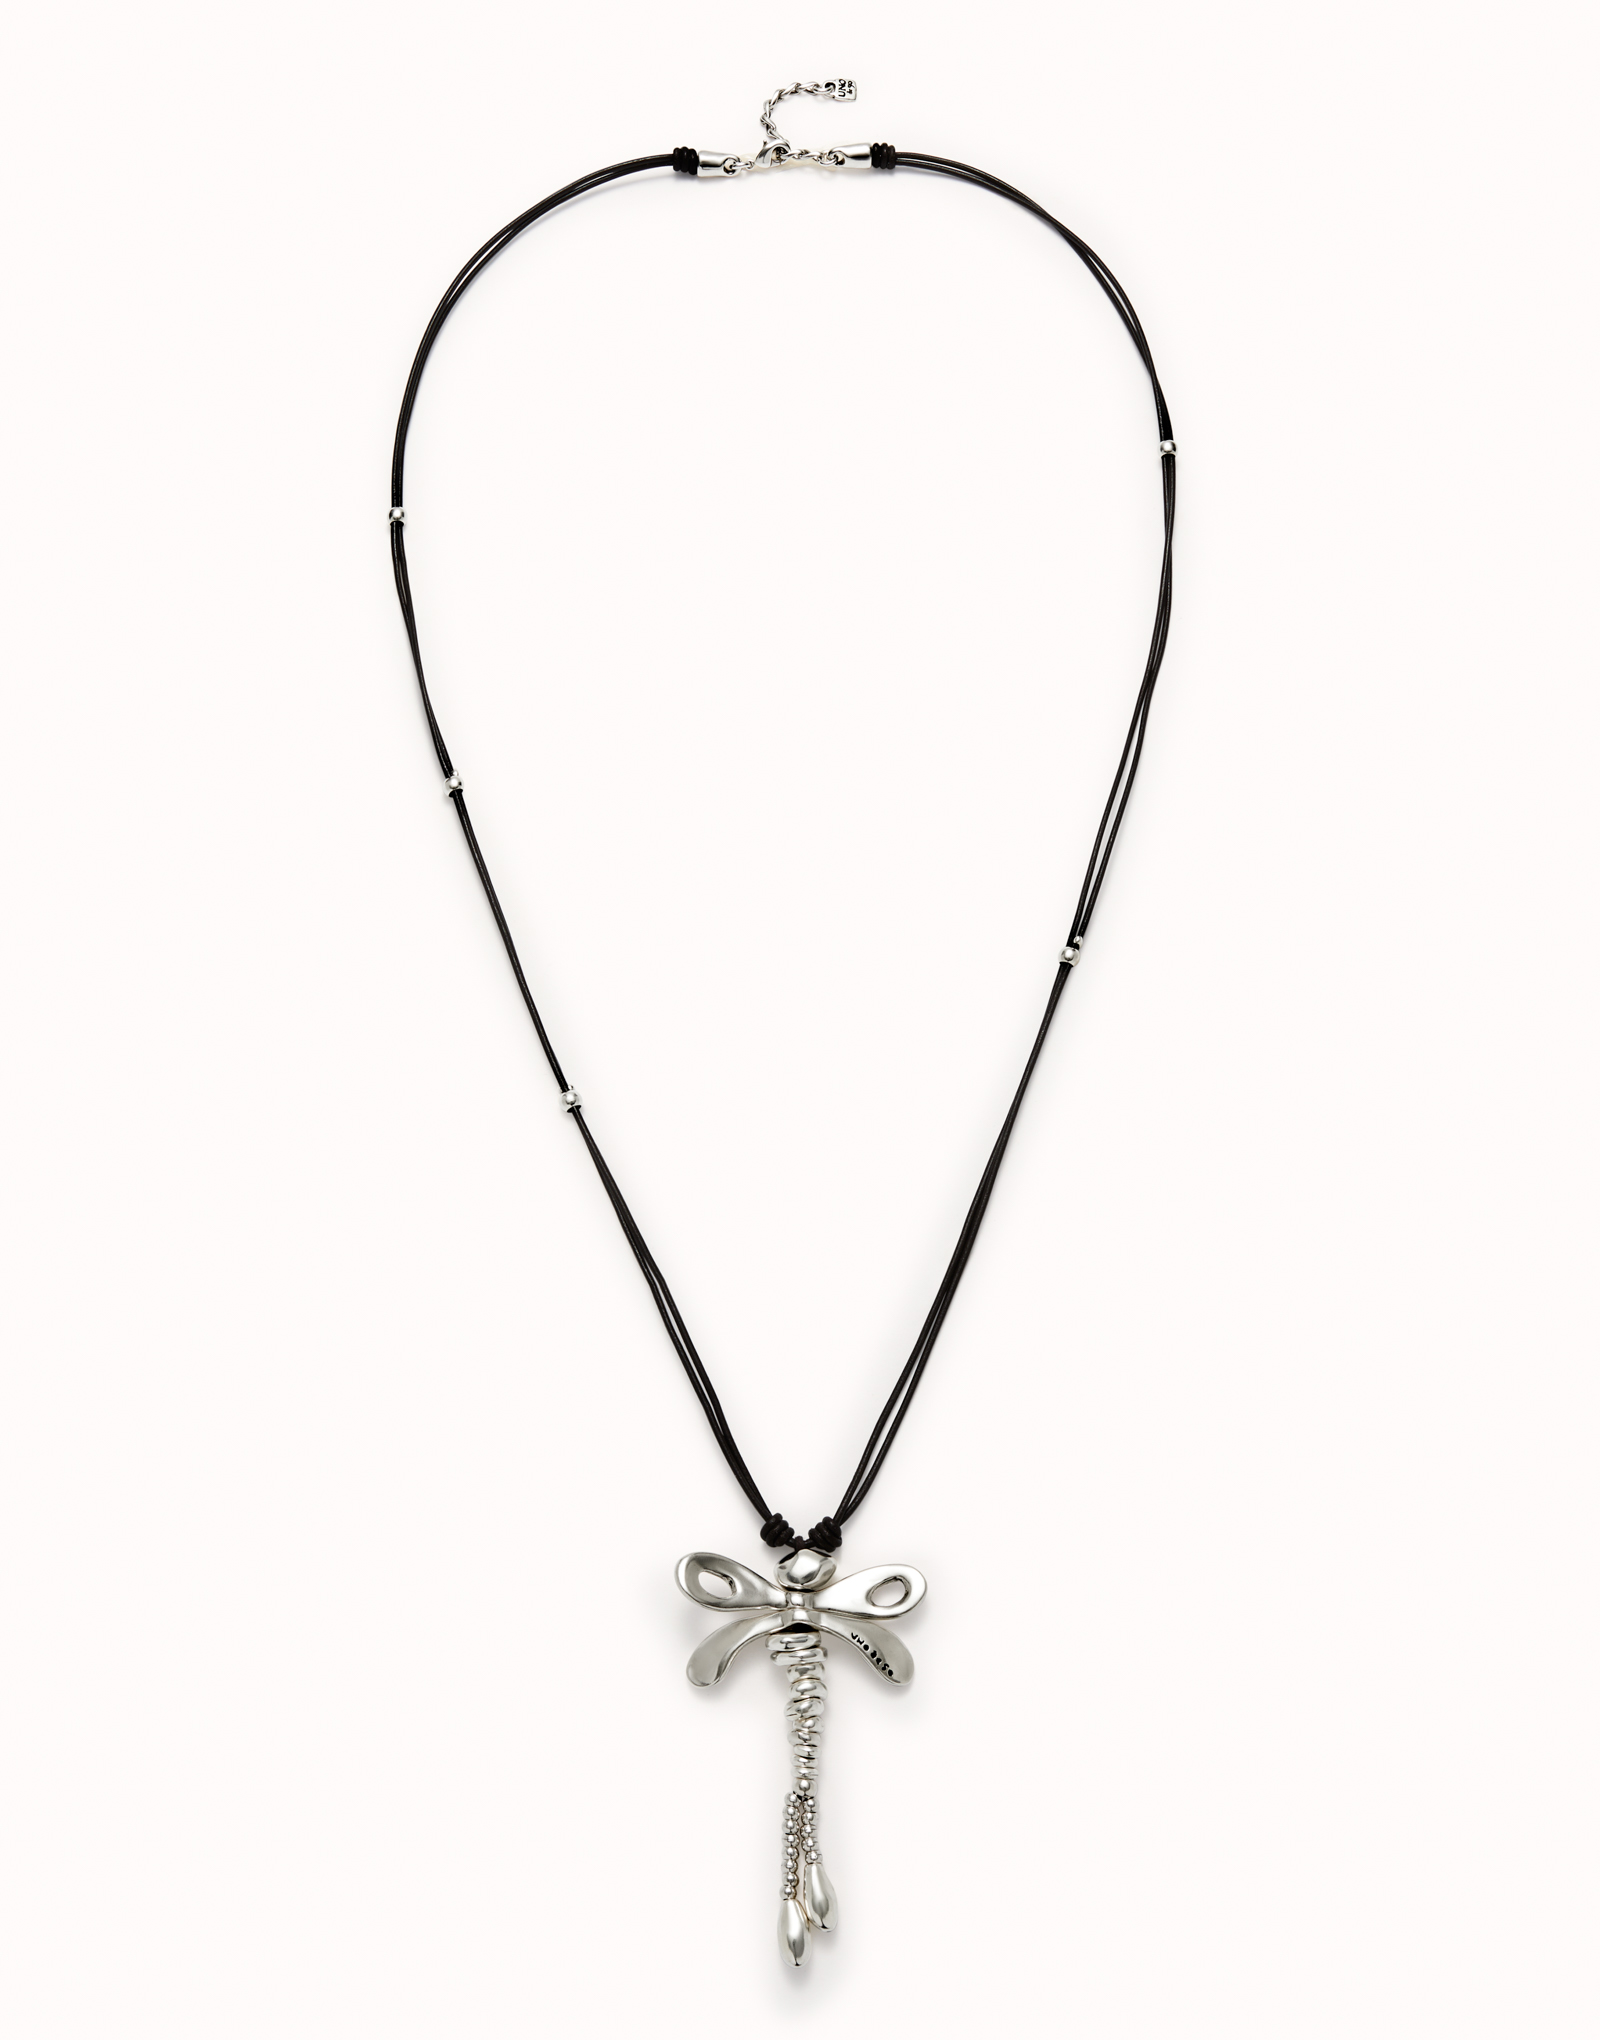 Collar largo de cuero con libélula central bañado en plata de ley, Plateado, large image number null